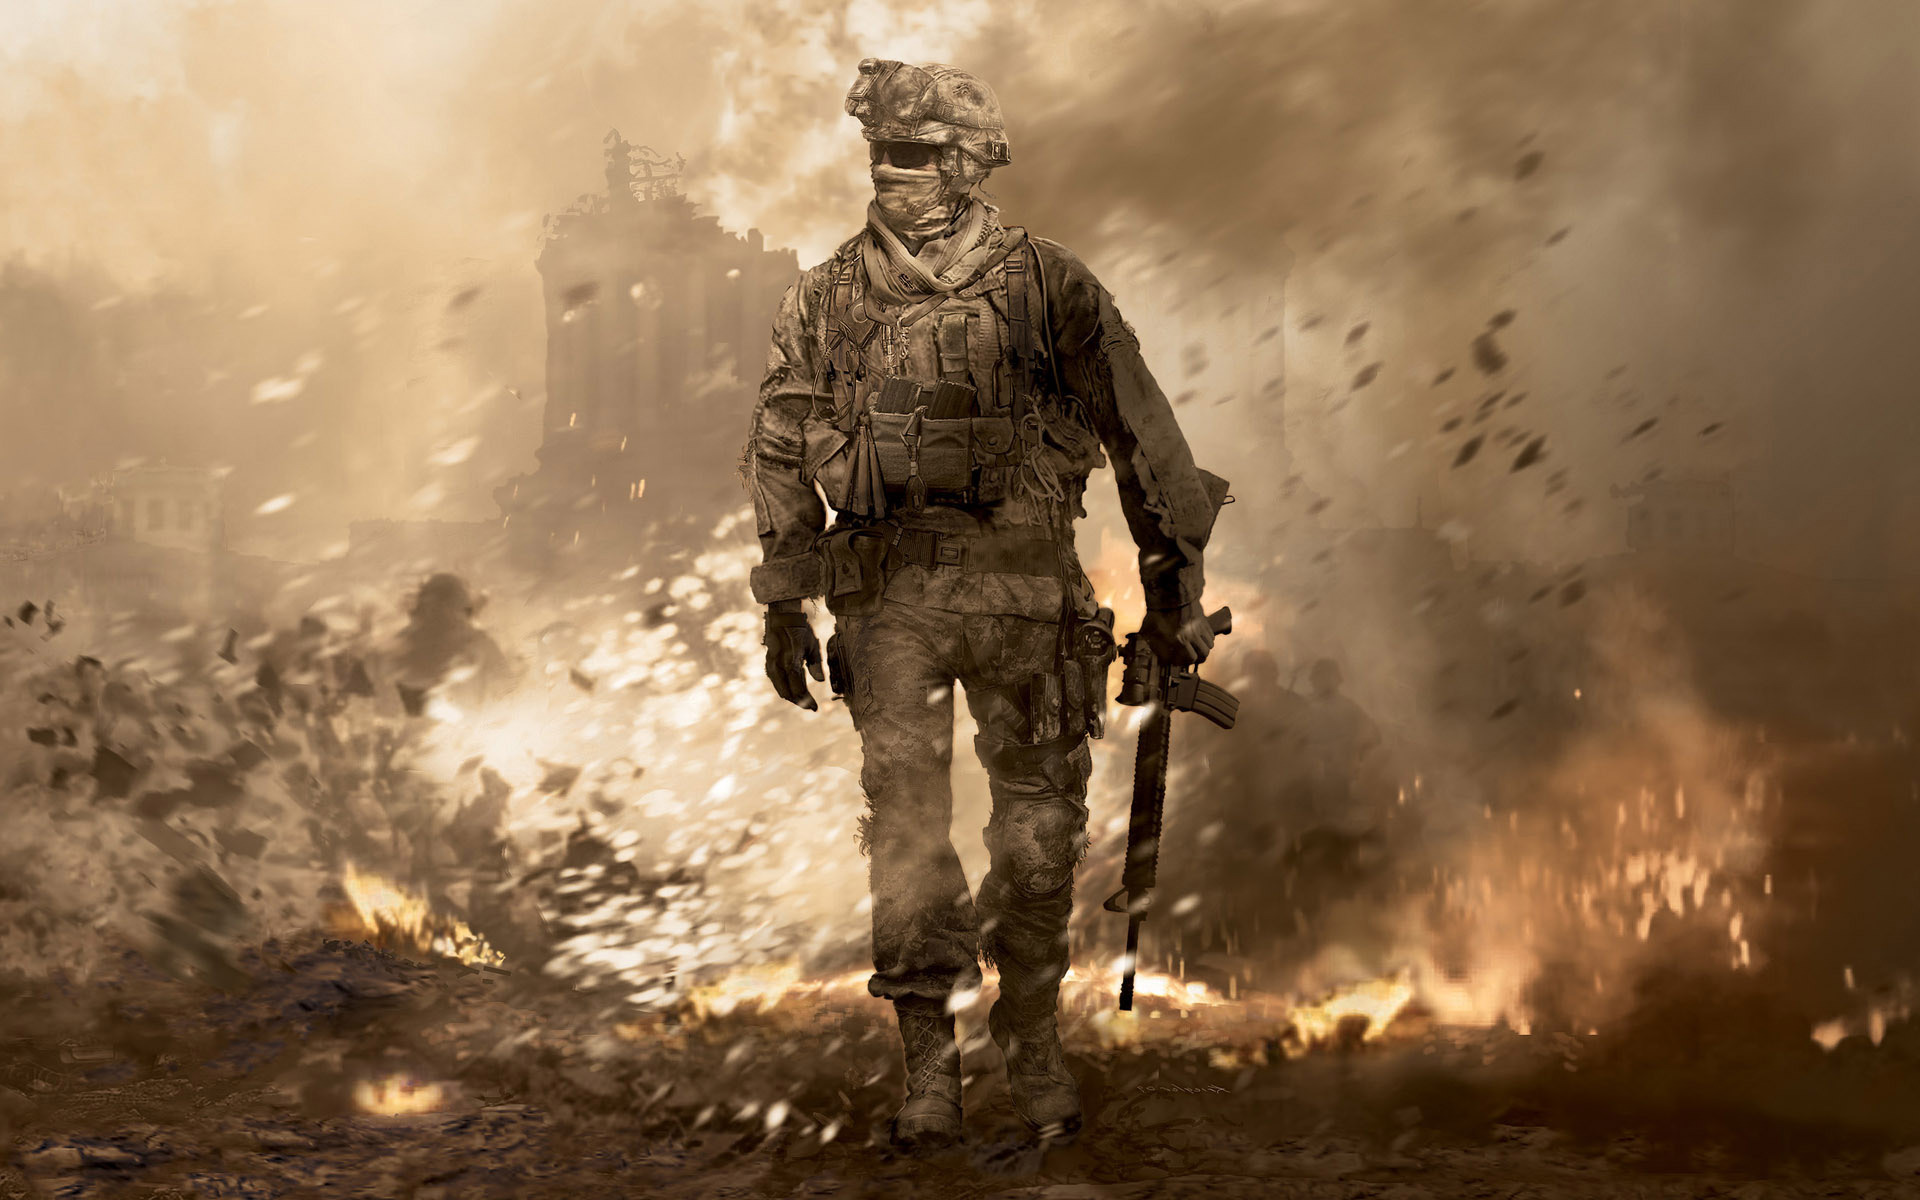 Call of Duty - 3A Modern Warfare 2 Wallpaper | RoyalWallpaper.Biz ...